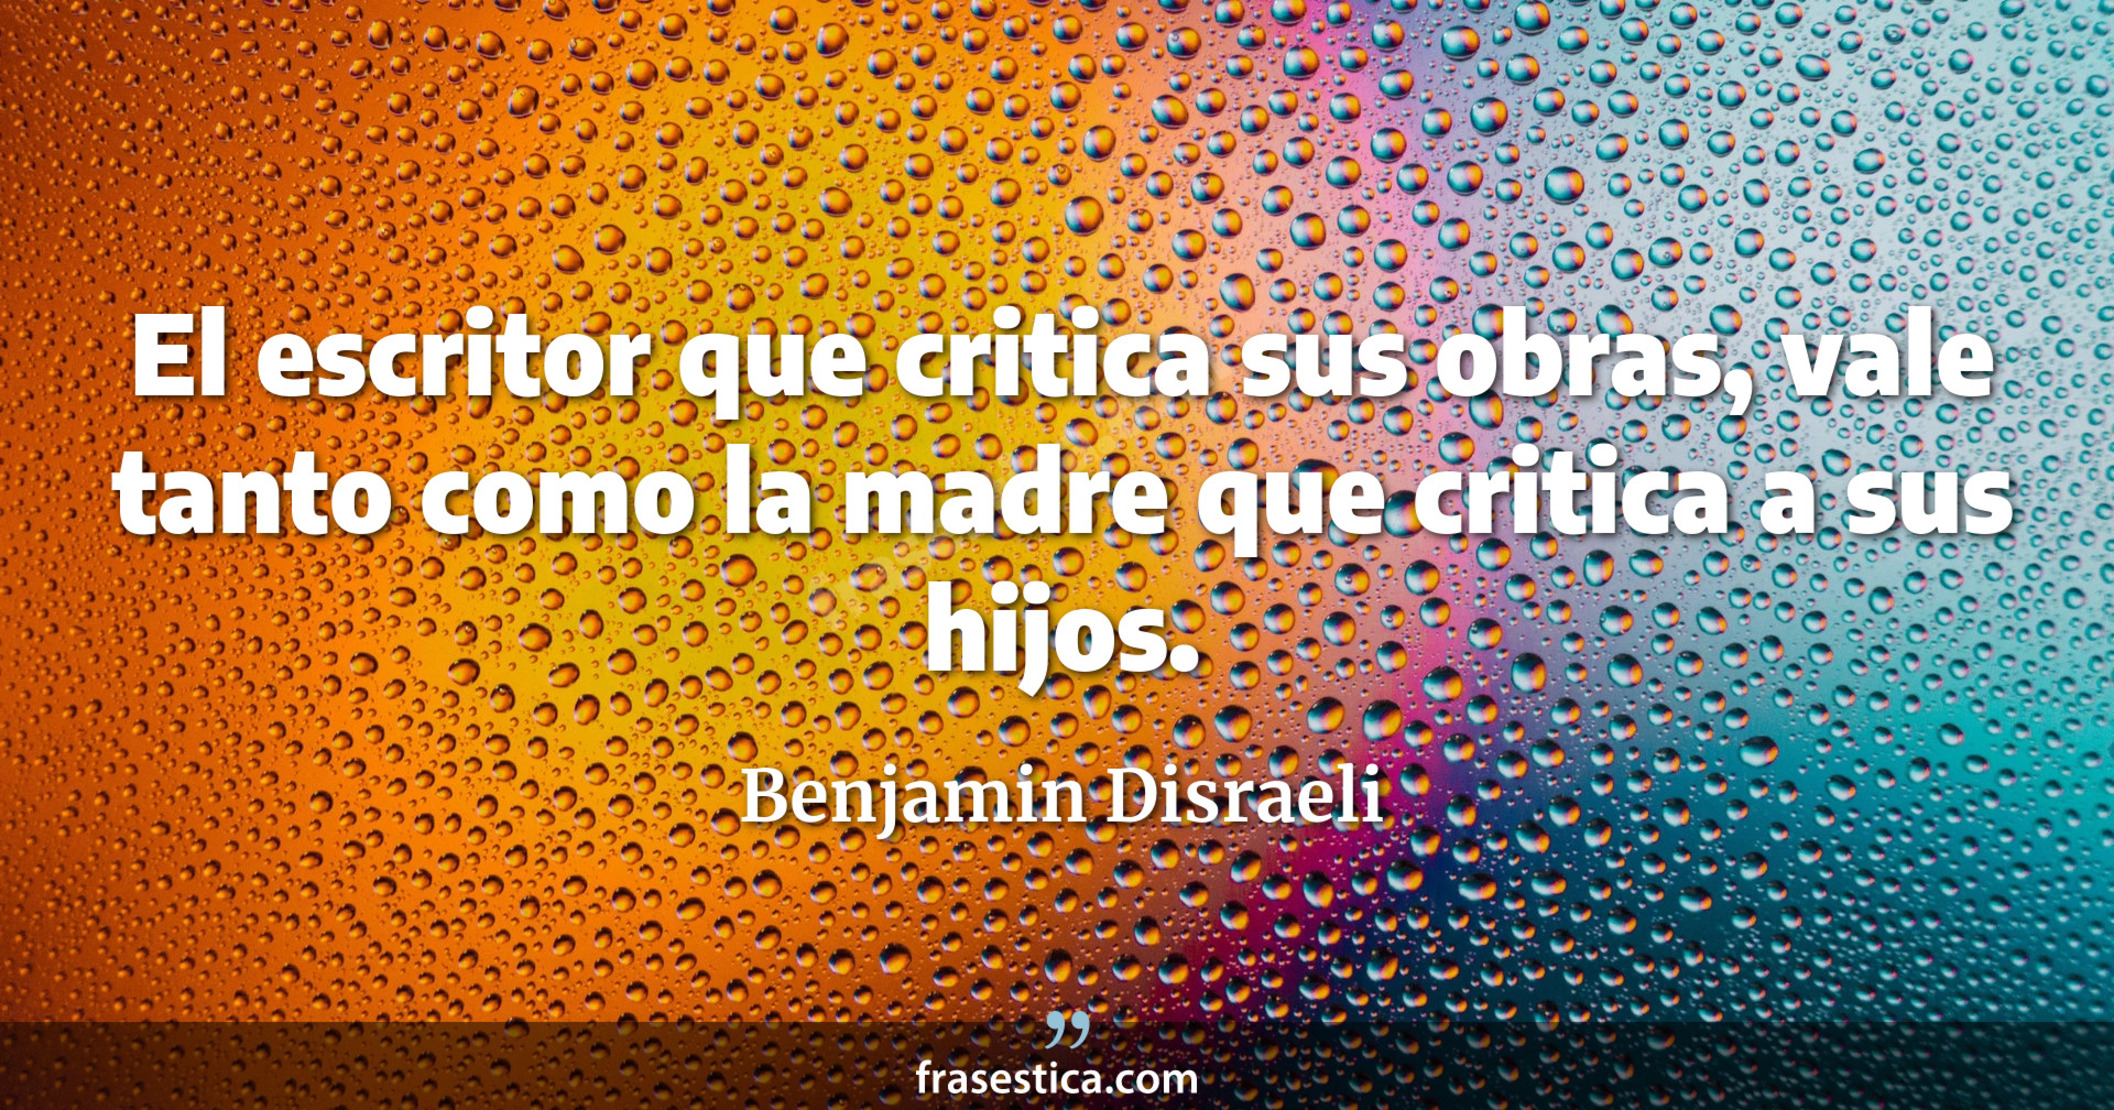 El escritor que critica sus obras, vale tanto como la madre que critica a sus hijos. - Benjamin Disraeli